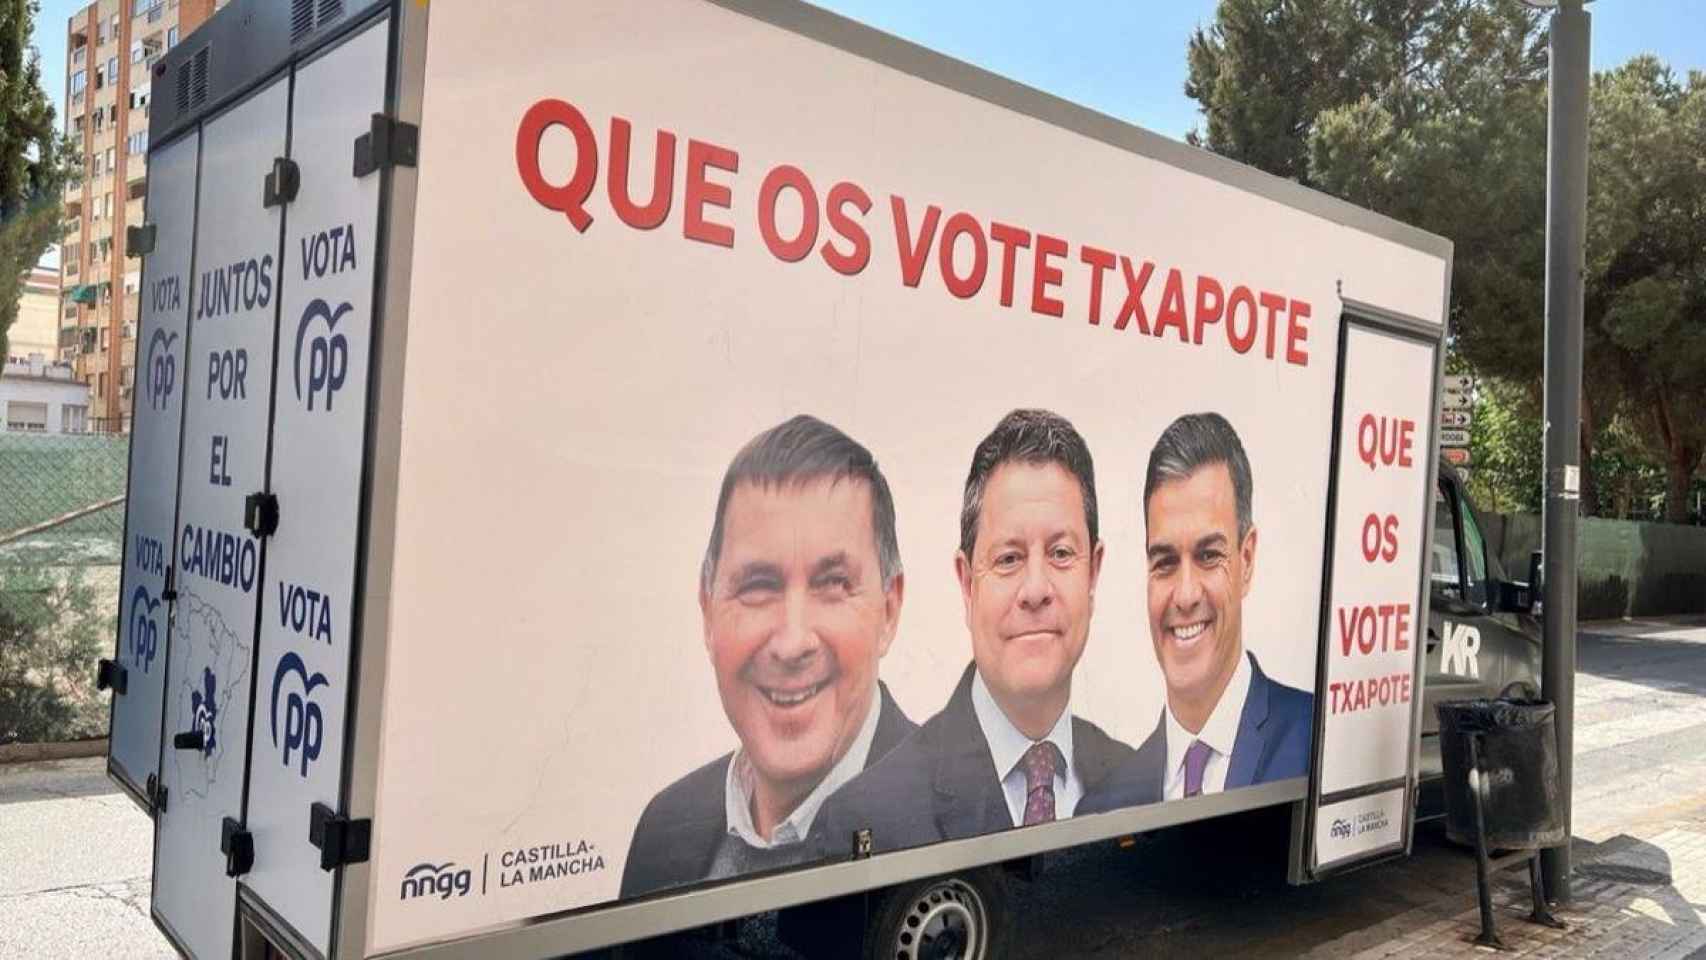 Furgoneta electoral del PP manchego rotulada con 'Que os vote Txapote'.